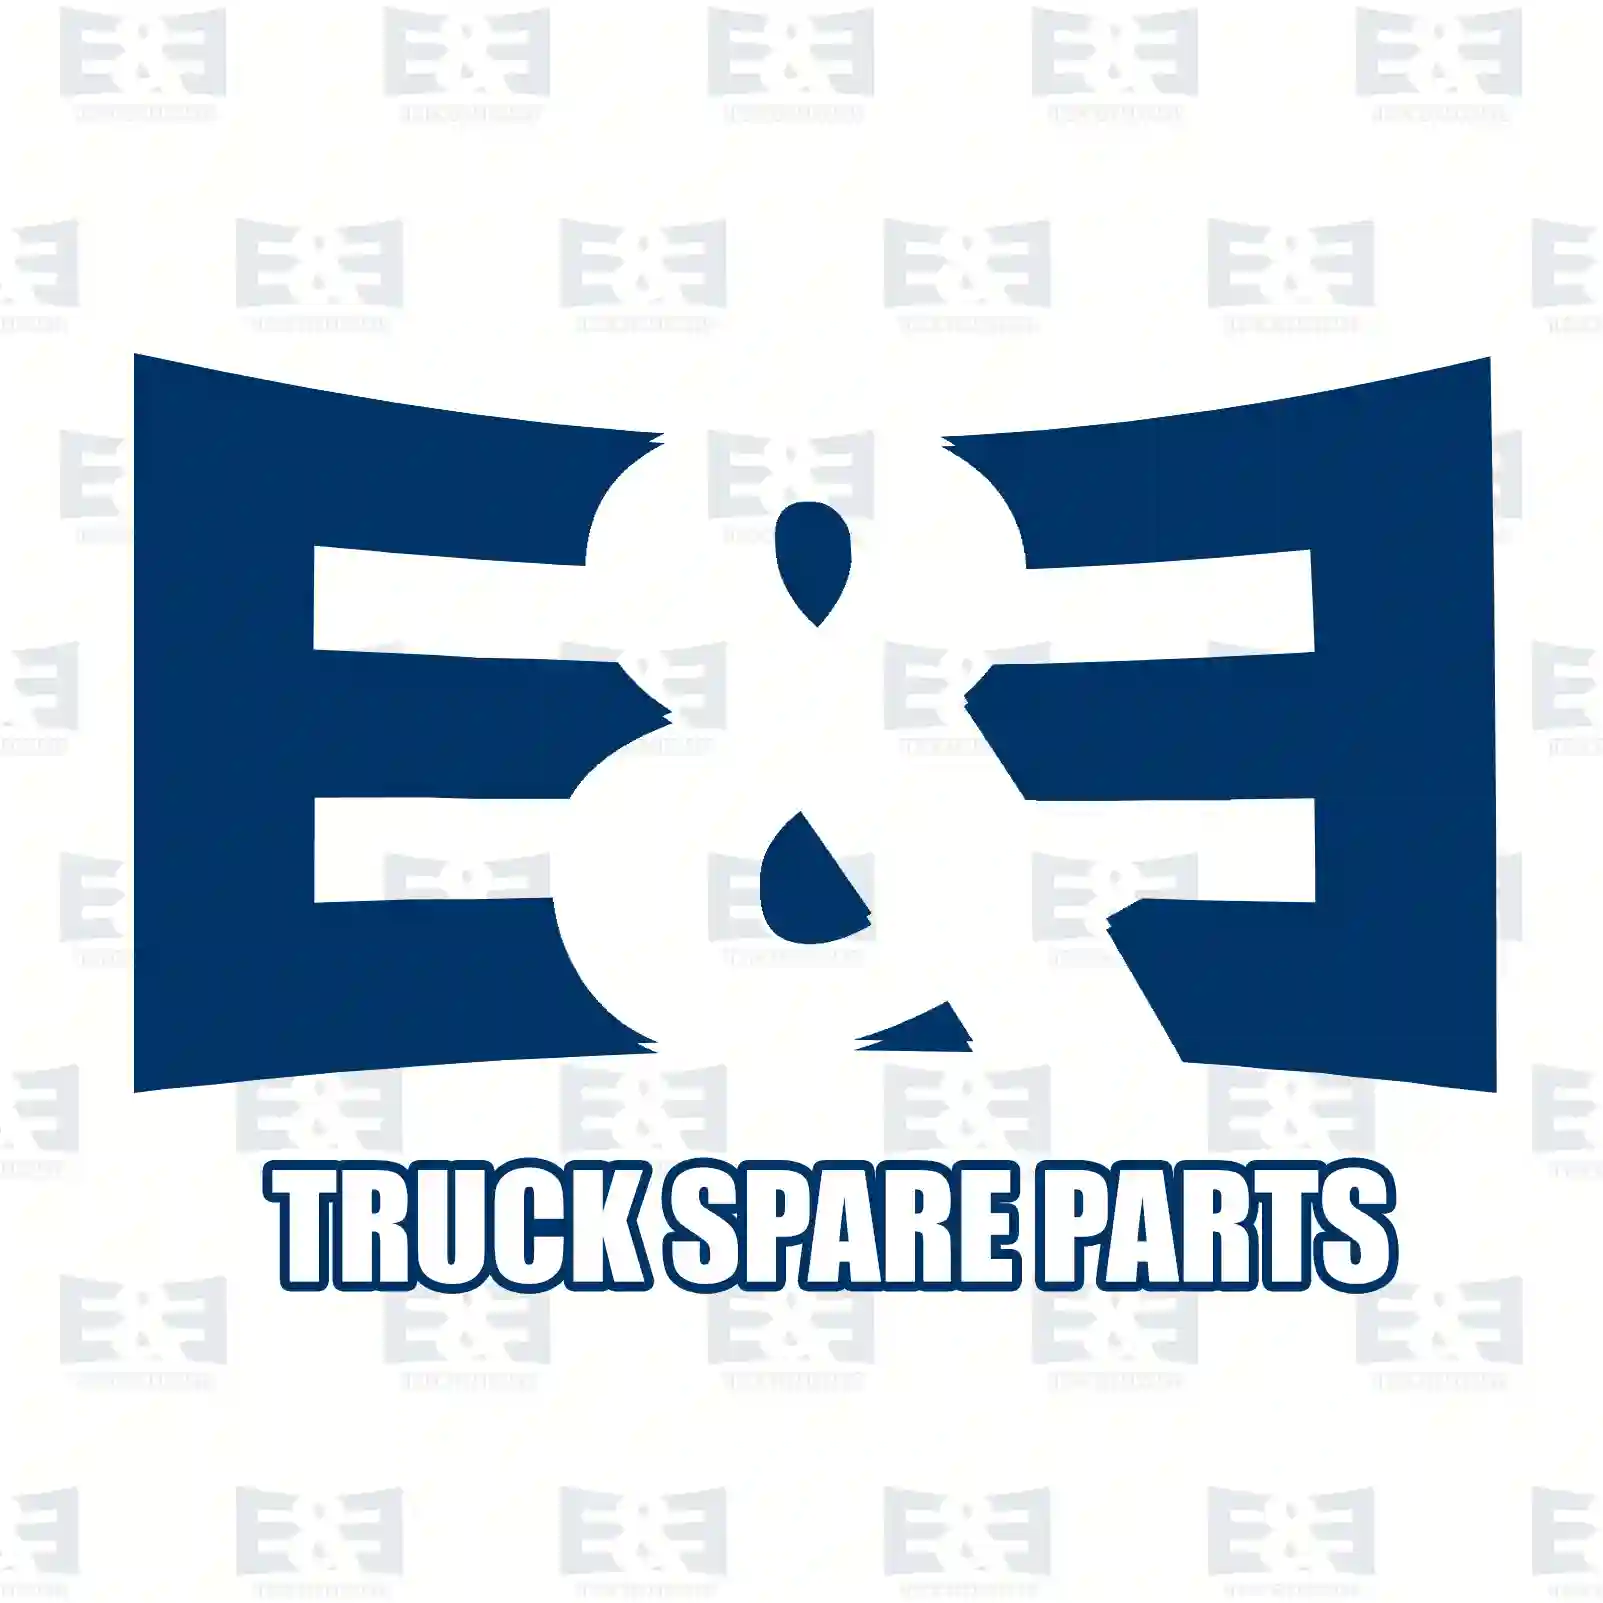 Load sensitive valve, 2E2293395, 1307043, 1338102, 302658 ||  2E2293395 E&E Truck Spare Parts | Truck Spare Parts, Auotomotive Spare Parts Load sensitive valve, 2E2293395, 1307043, 1338102, 302658 ||  2E2293395 E&E Truck Spare Parts | Truck Spare Parts, Auotomotive Spare Parts